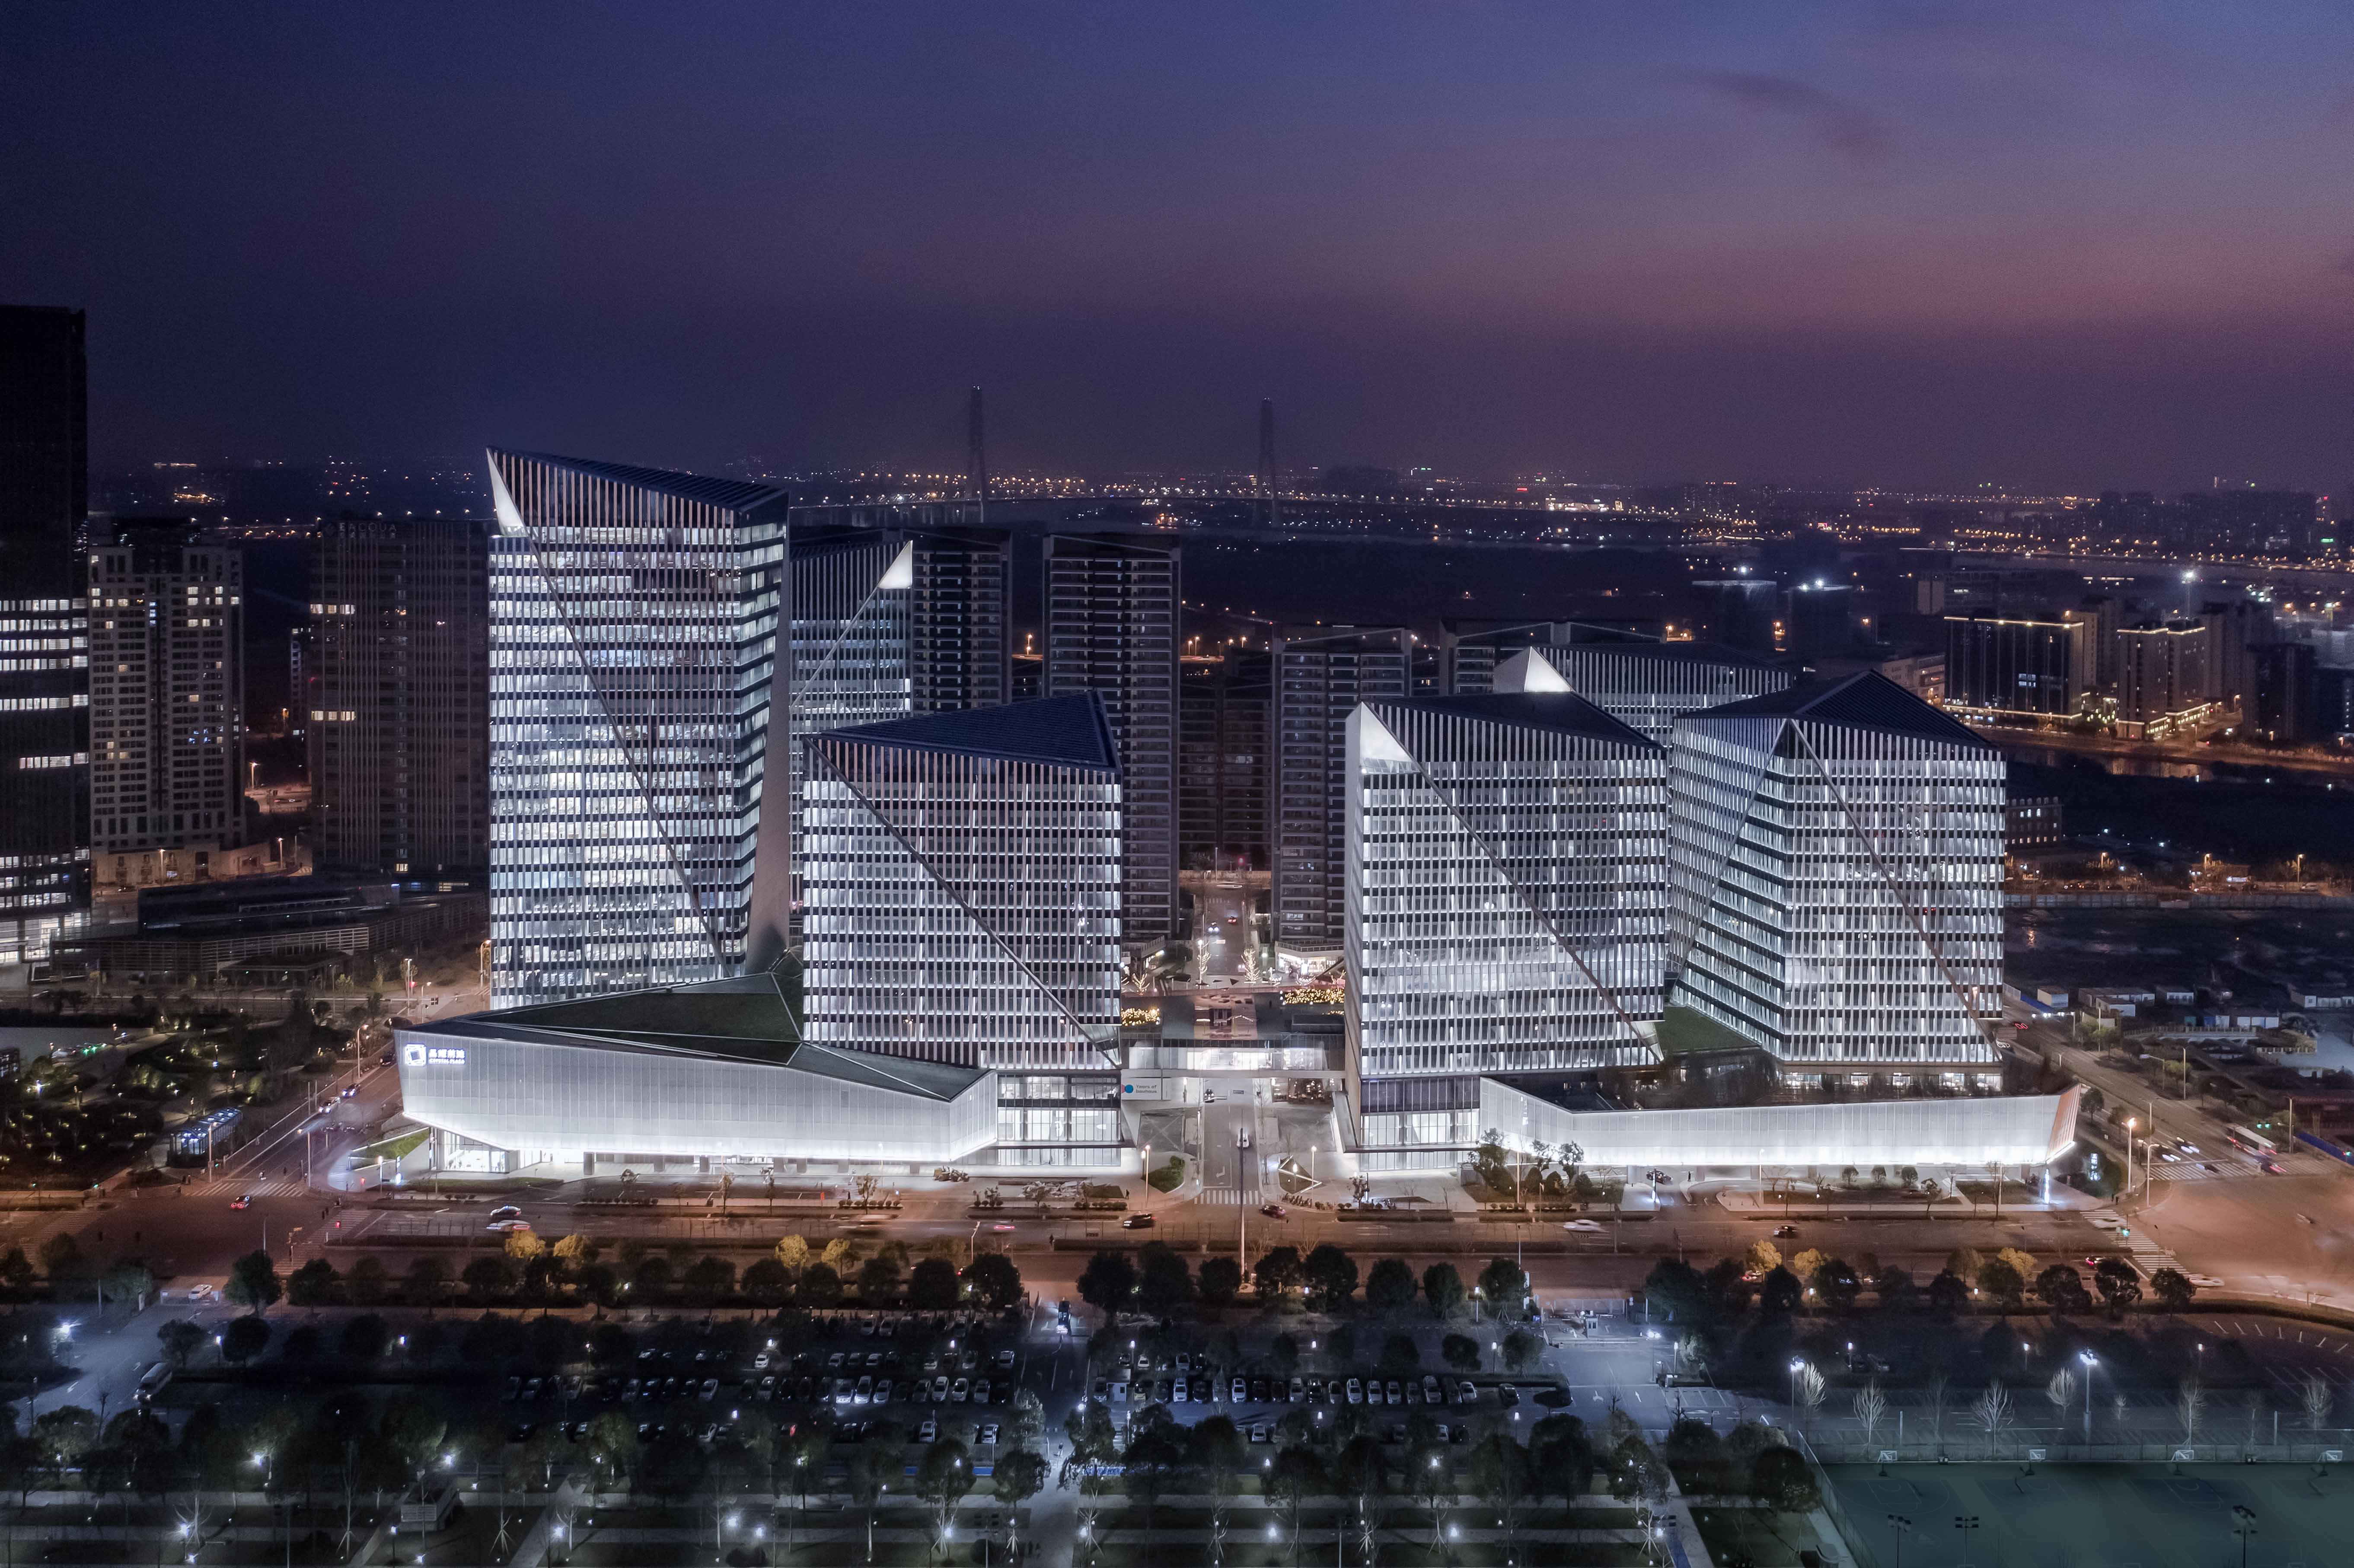 上海前滩晶耀广场照明工程——2020神灯奖申报工程